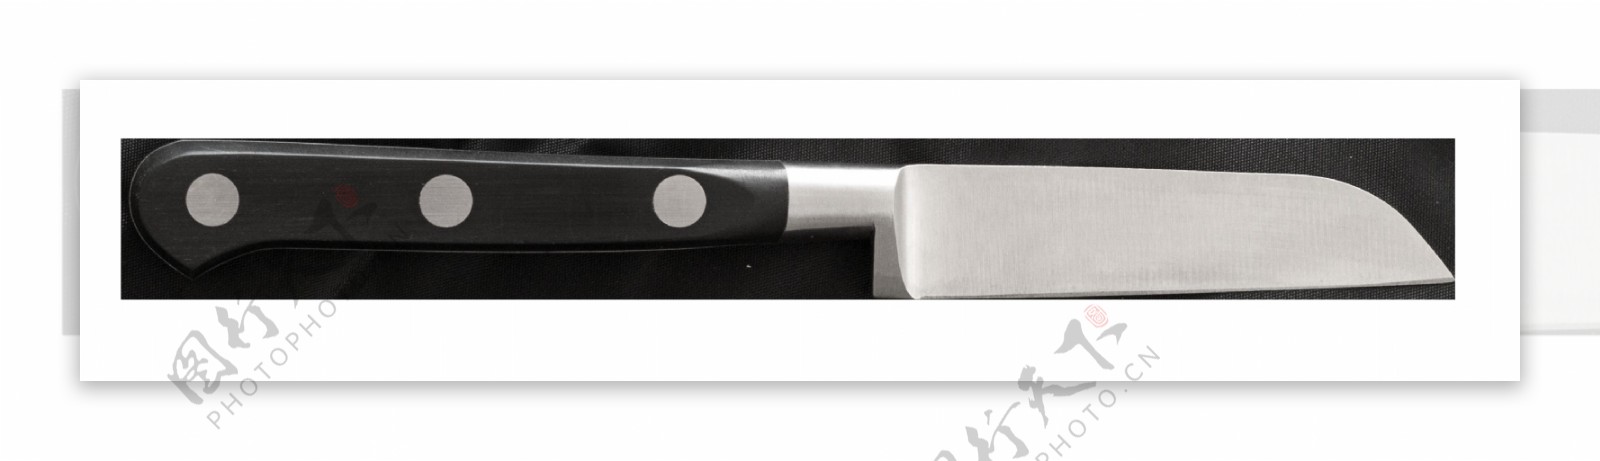 小型刀刀身较短实物厨房元素